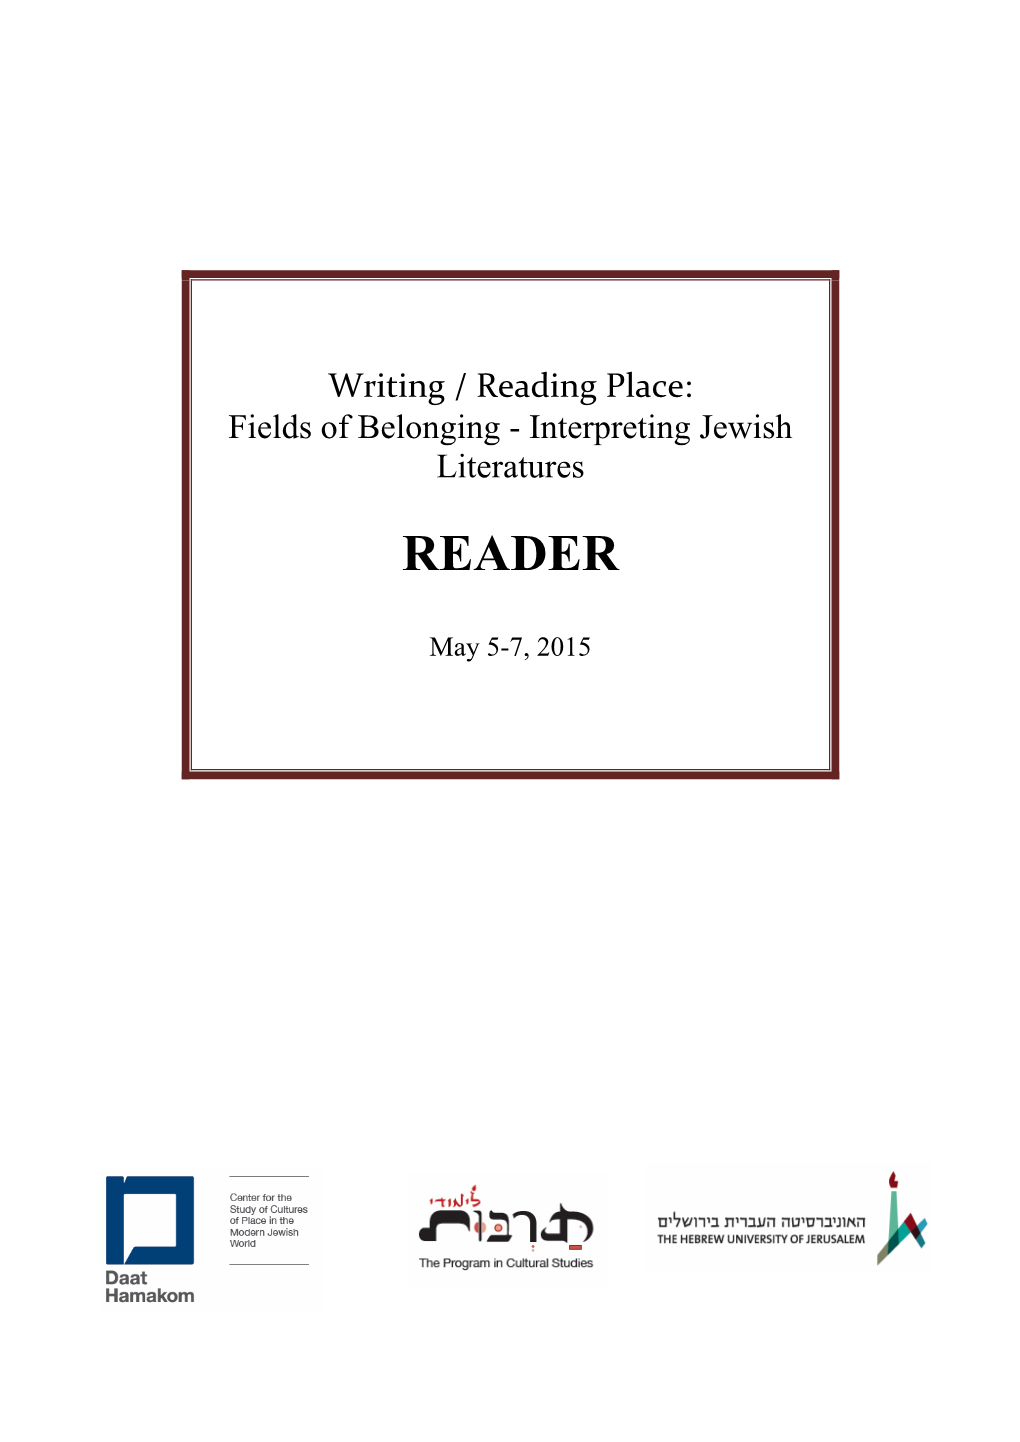 Fields of Belonging - Interpreting Jewish Literatures